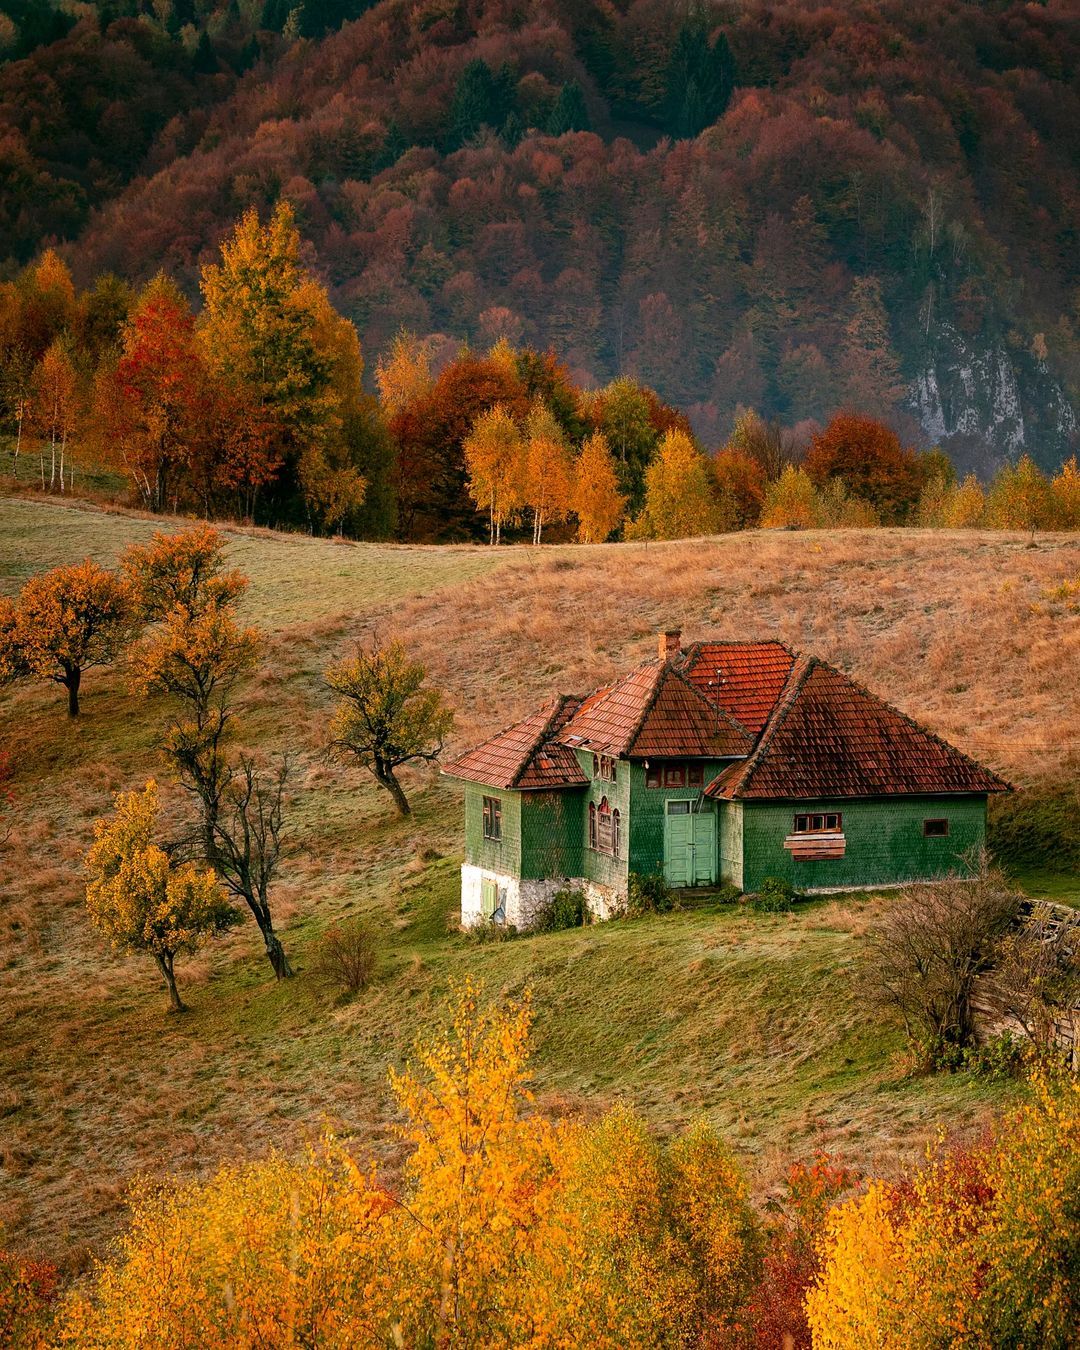 Amazing Romania